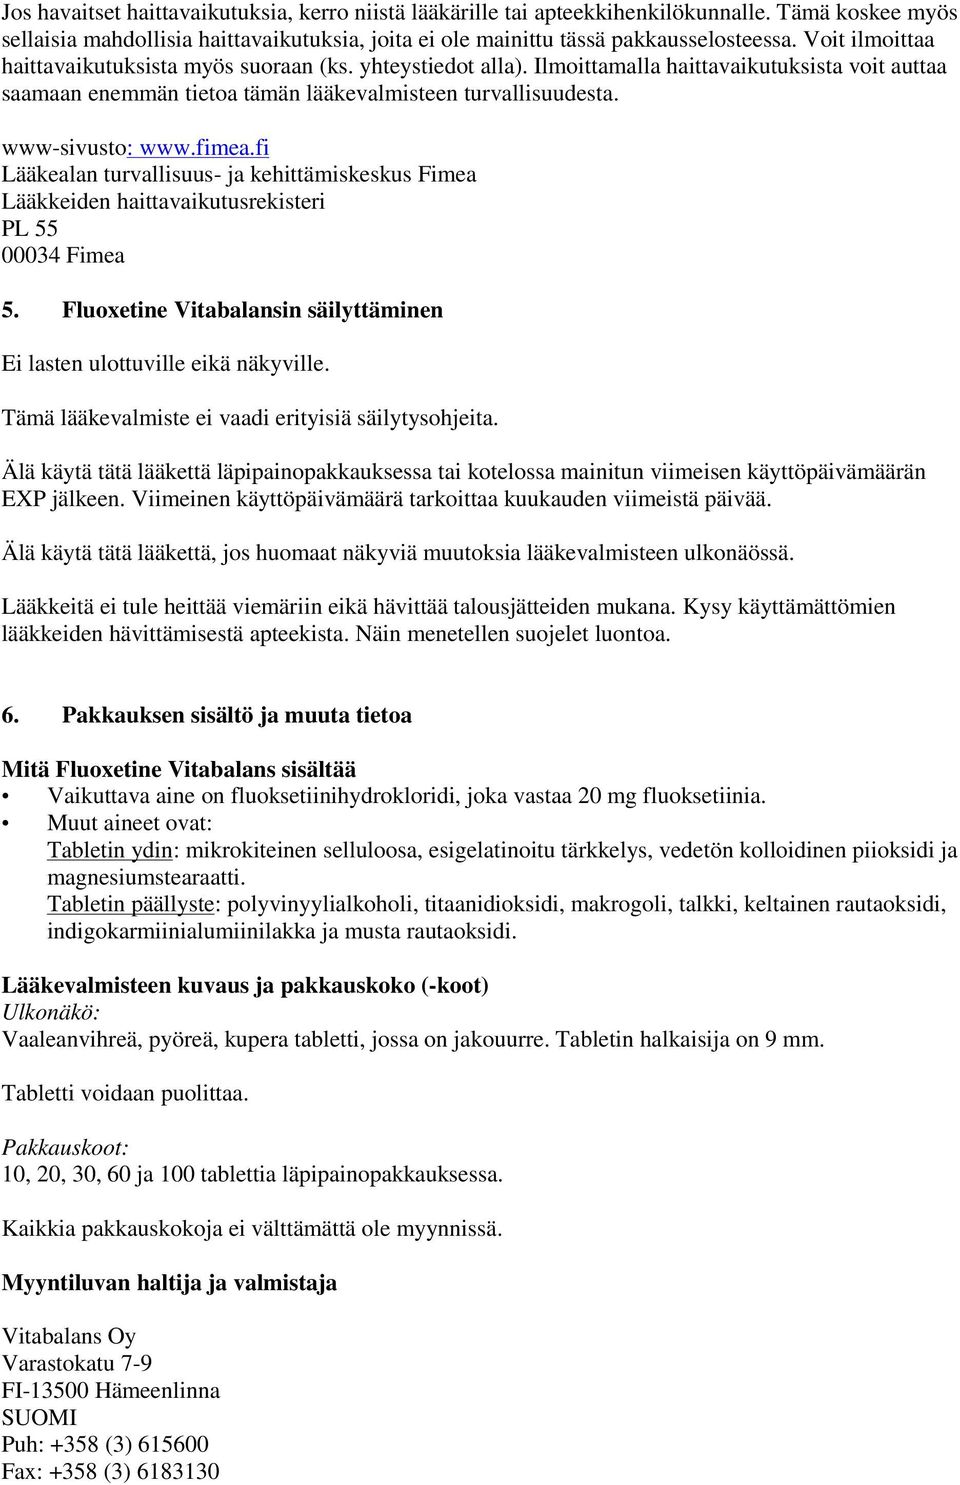 fimea.fi Lääkealan turvallisuus- ja kehittämiskeskus Fimea Lääkkeiden haittavaikutusrekisteri PL 55 00034 Fimea 5. Fluoxetine Vitabalansin säilyttäminen Ei lasten ulottuville eikä näkyville.